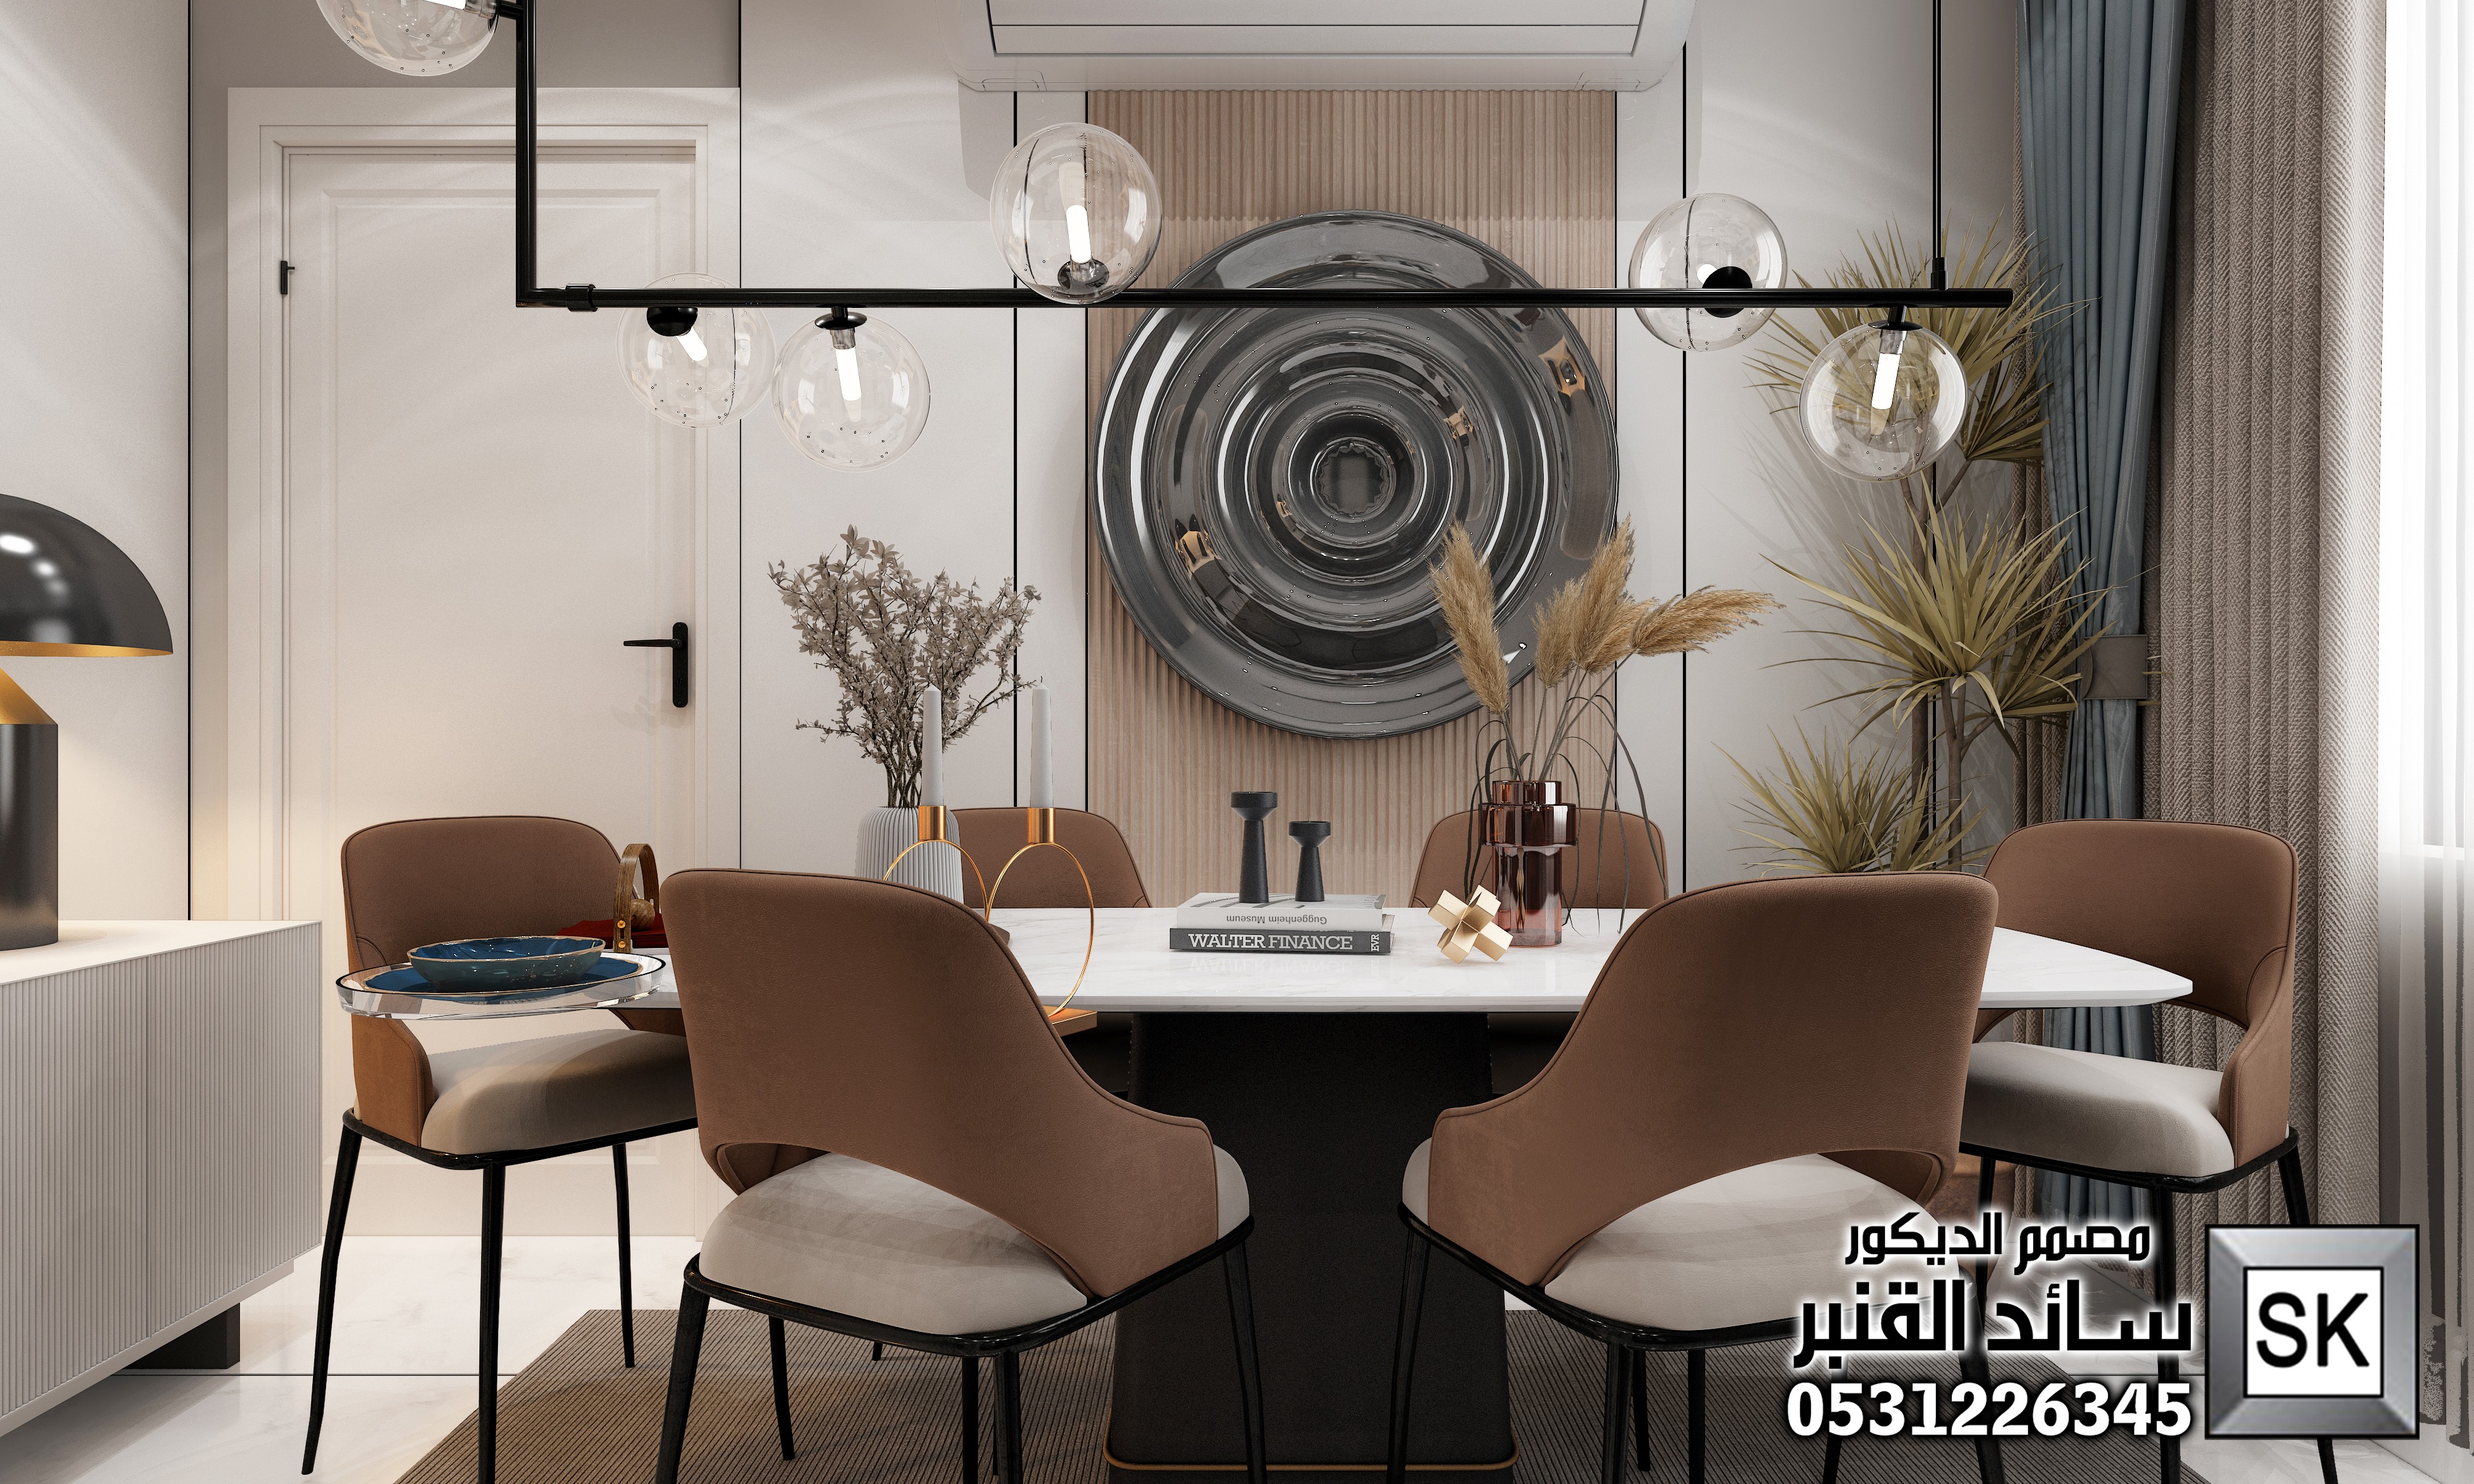 مصمم ديكور داخلي مبدع بالسعودية